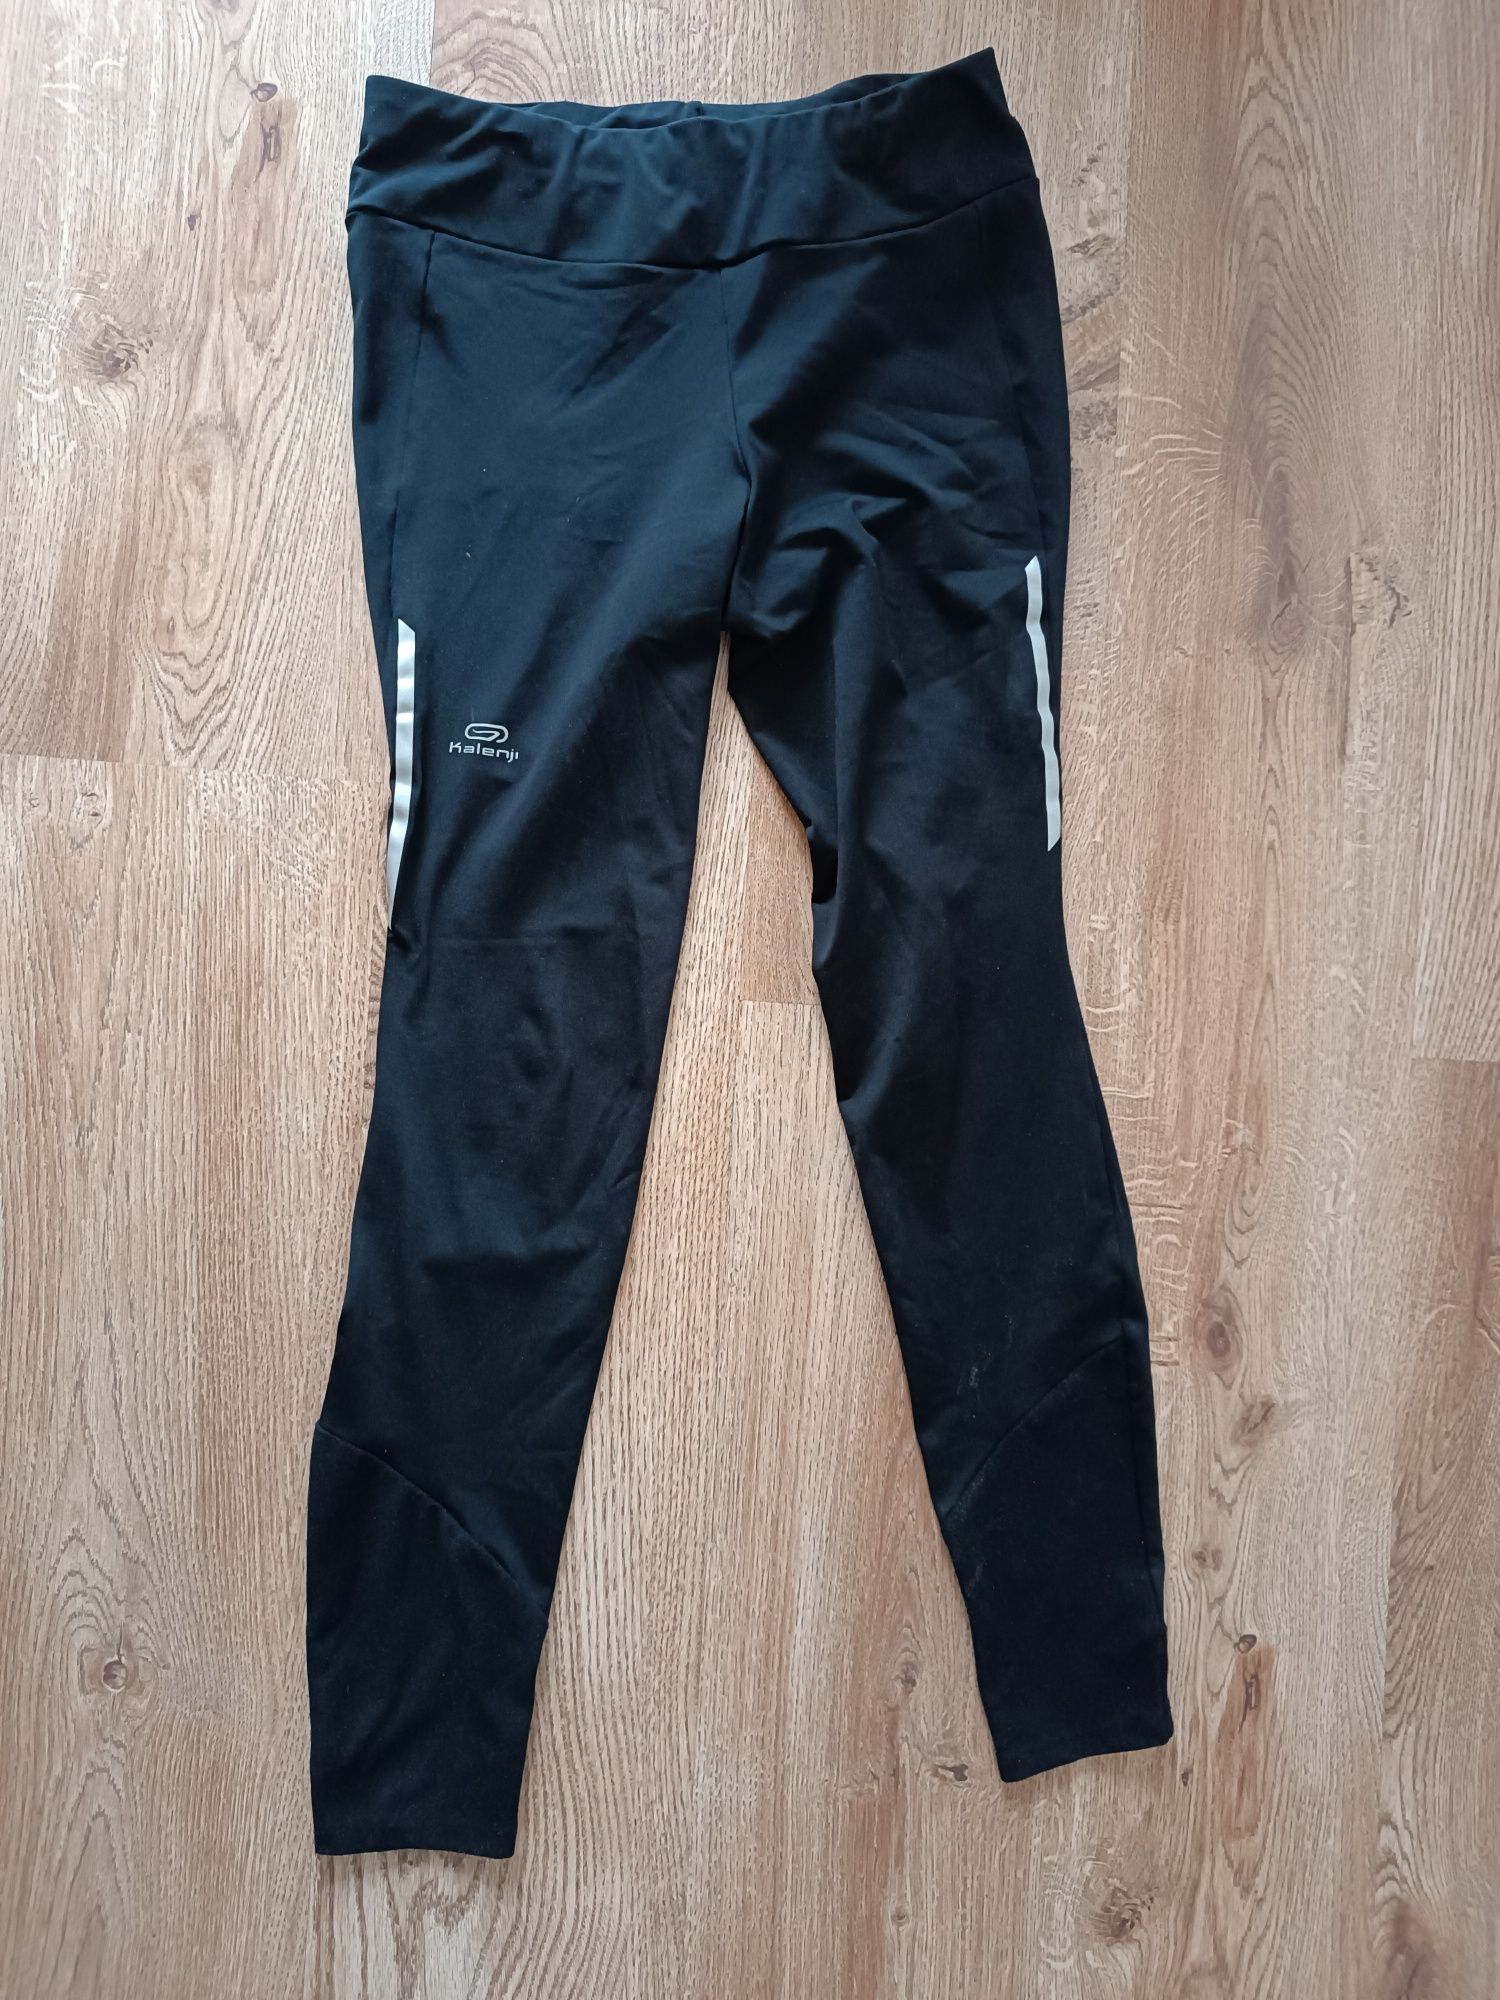 Czarne damskie ocieplane termoaktywne spodnie do biegania, Kalenji, S